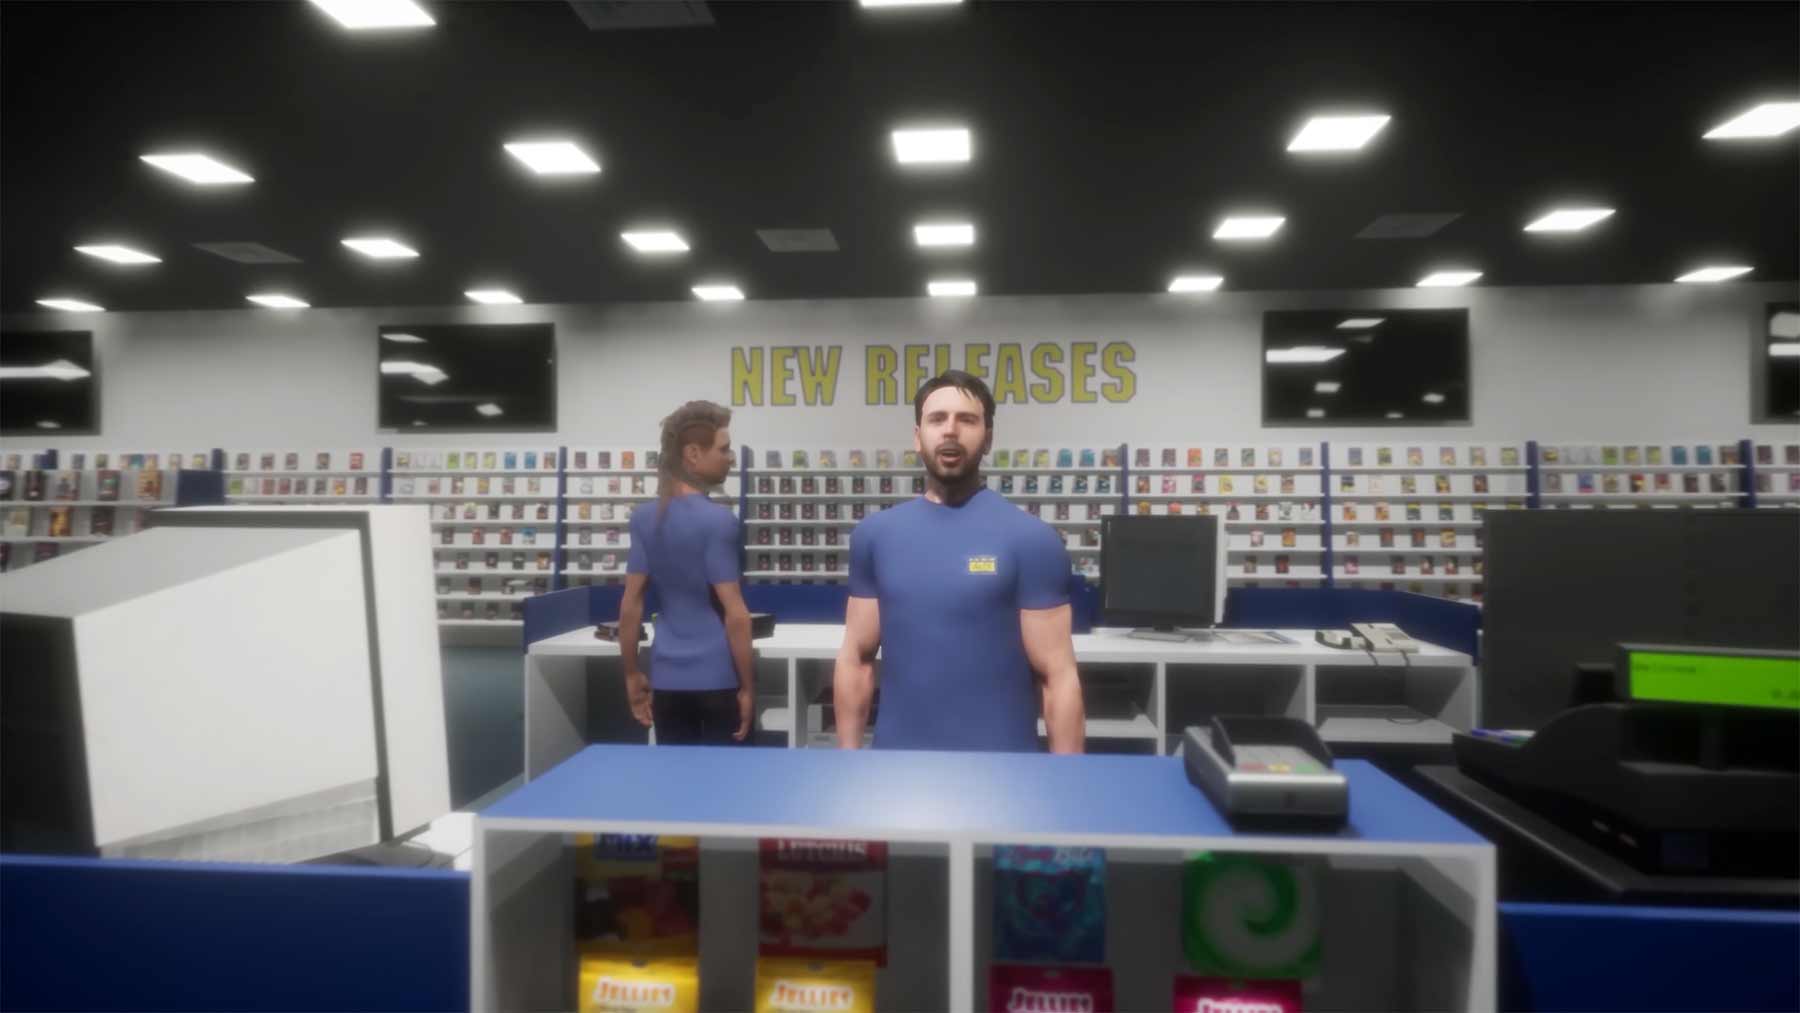 VR-Spiel lässt euch einen Film aus der Videothek ausleihen VR-game-trailer-the-last-video-store 